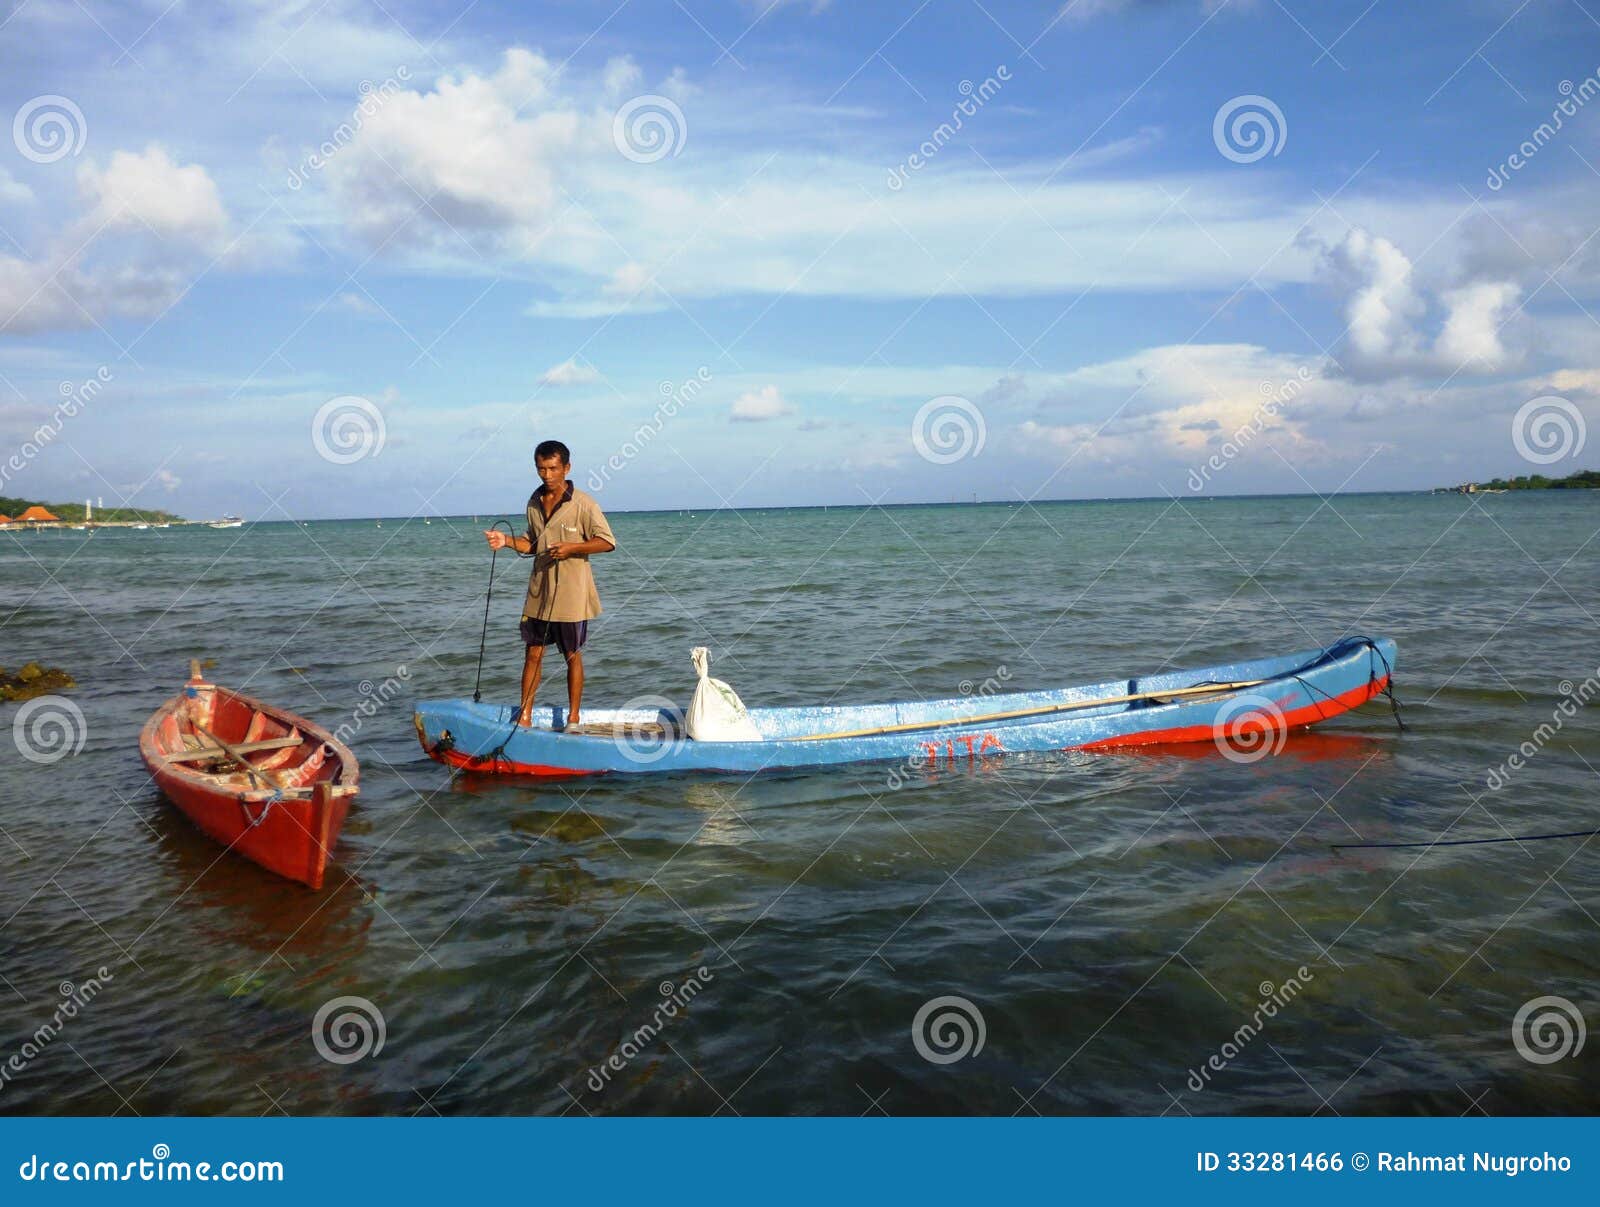 Sampan Boat